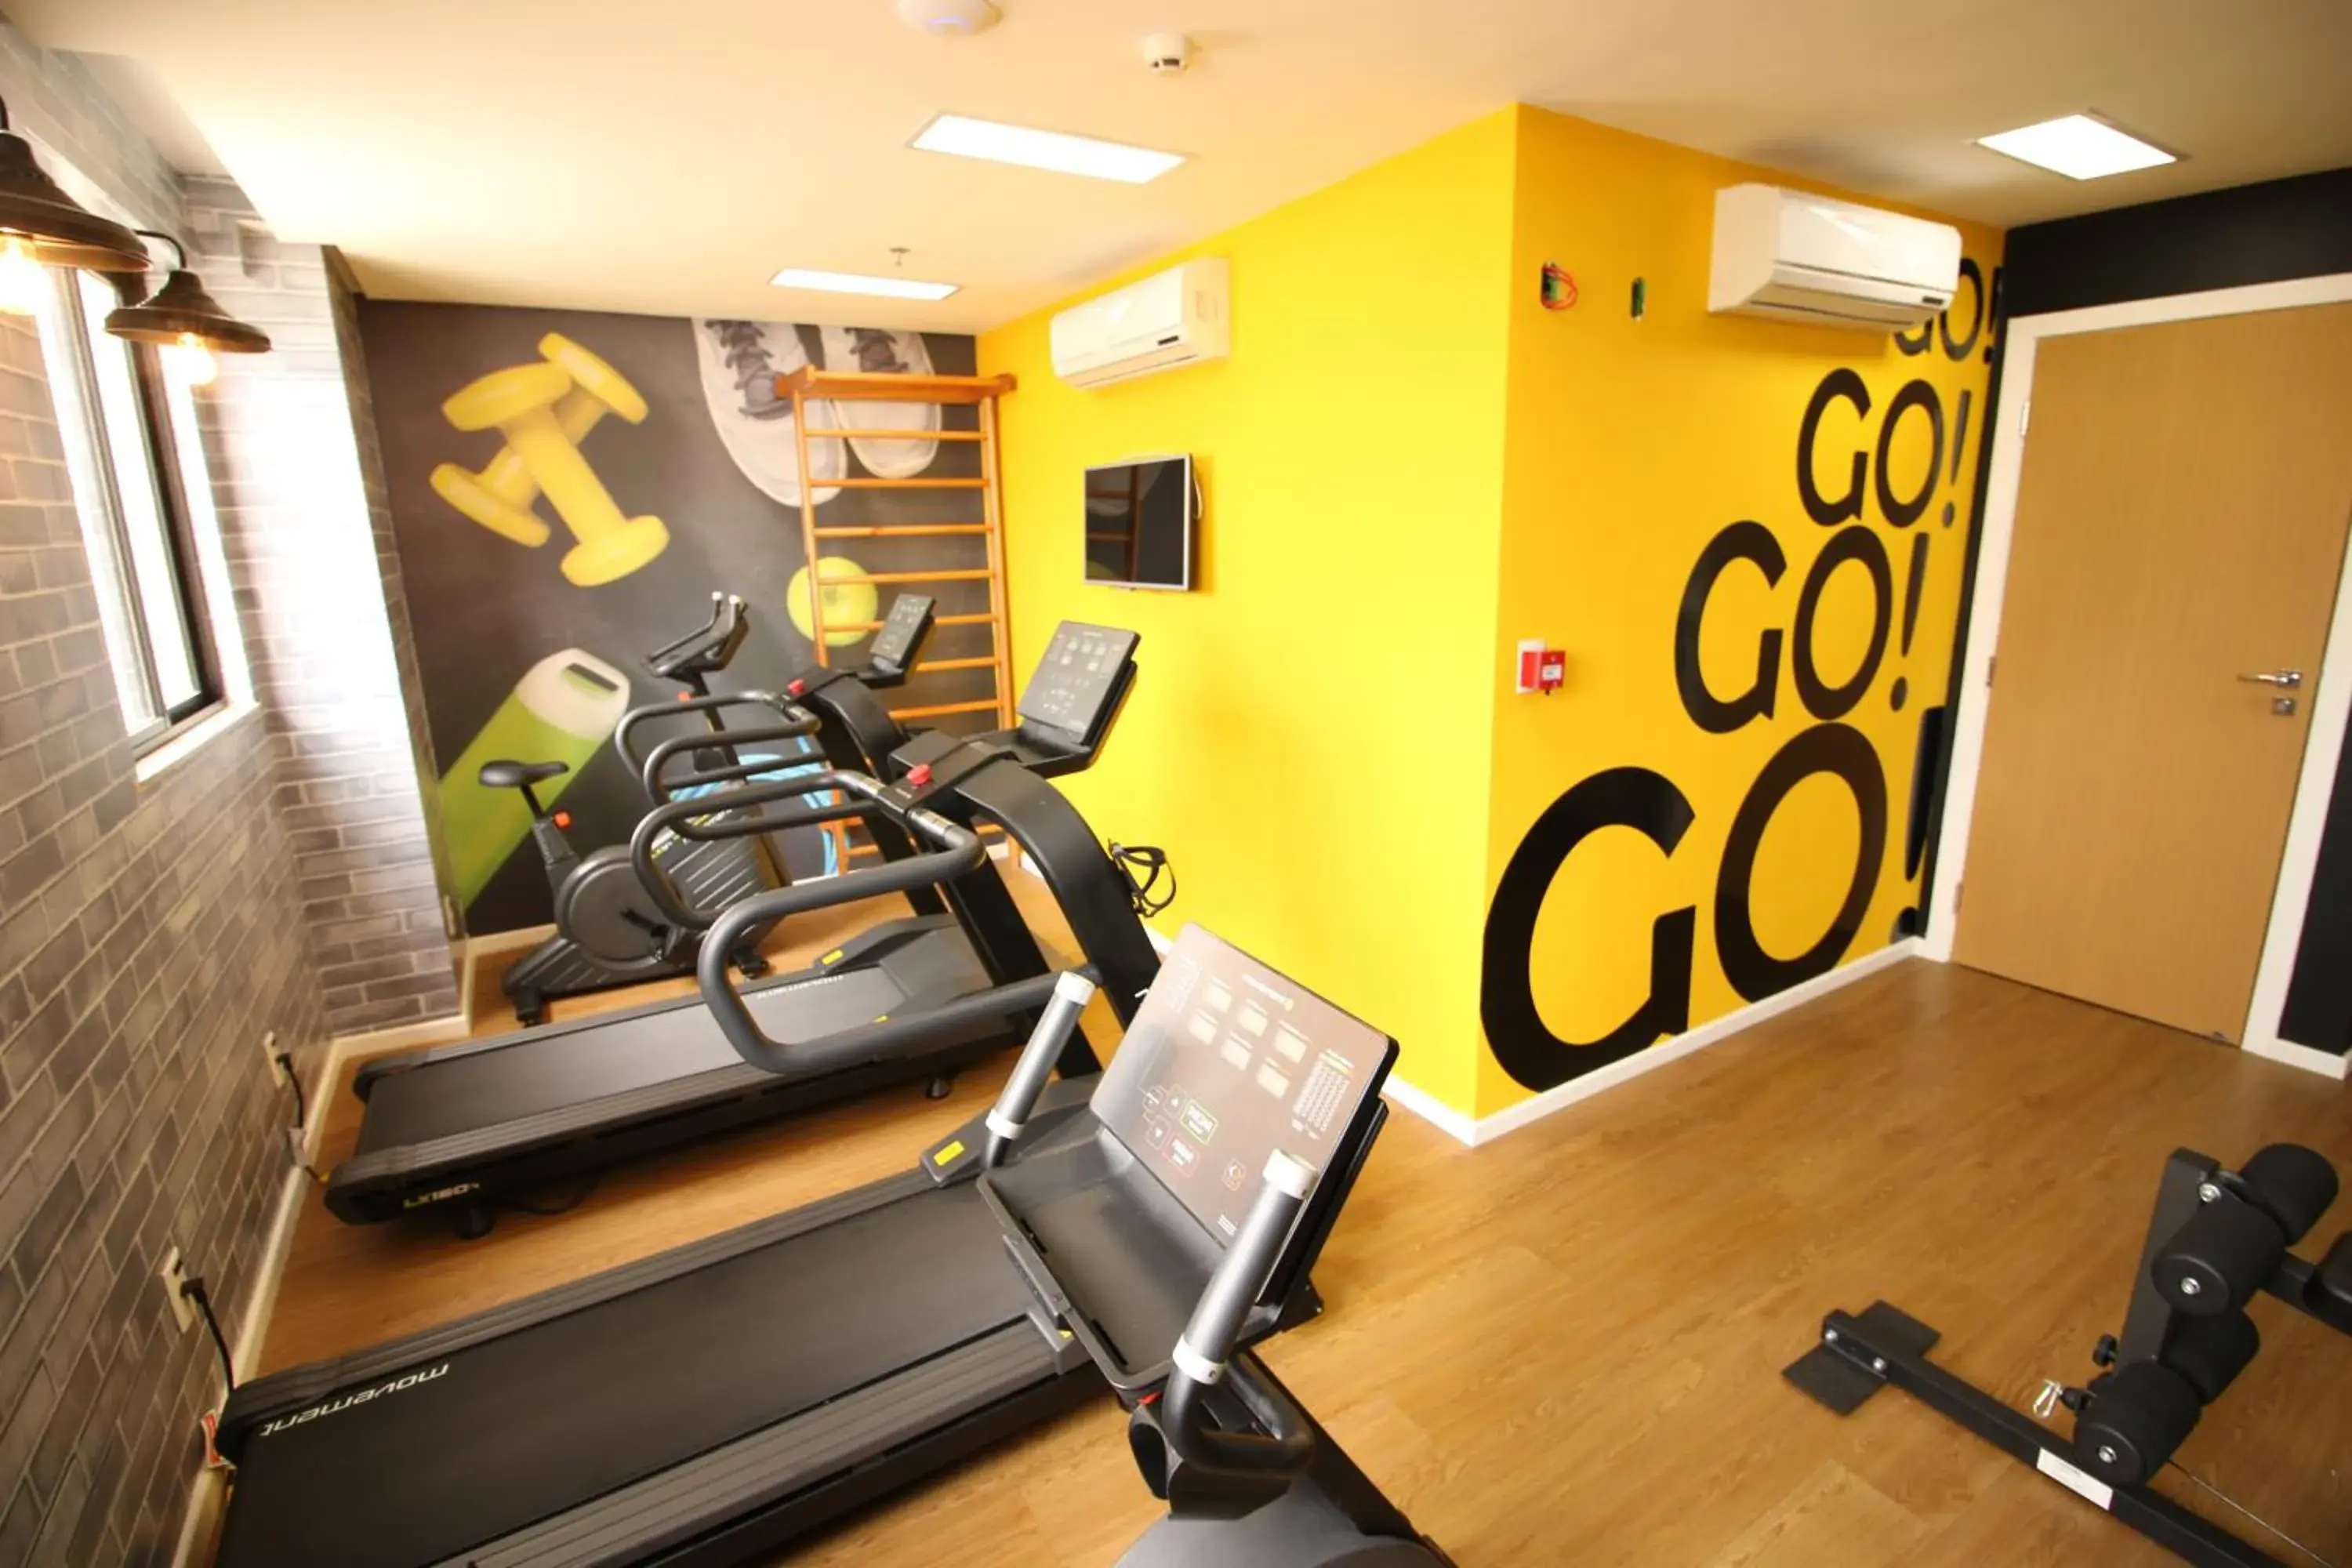 Fitness centre/facilities, Fitness Center/Facilities in IBIS Styles Vitoria Da Conquista